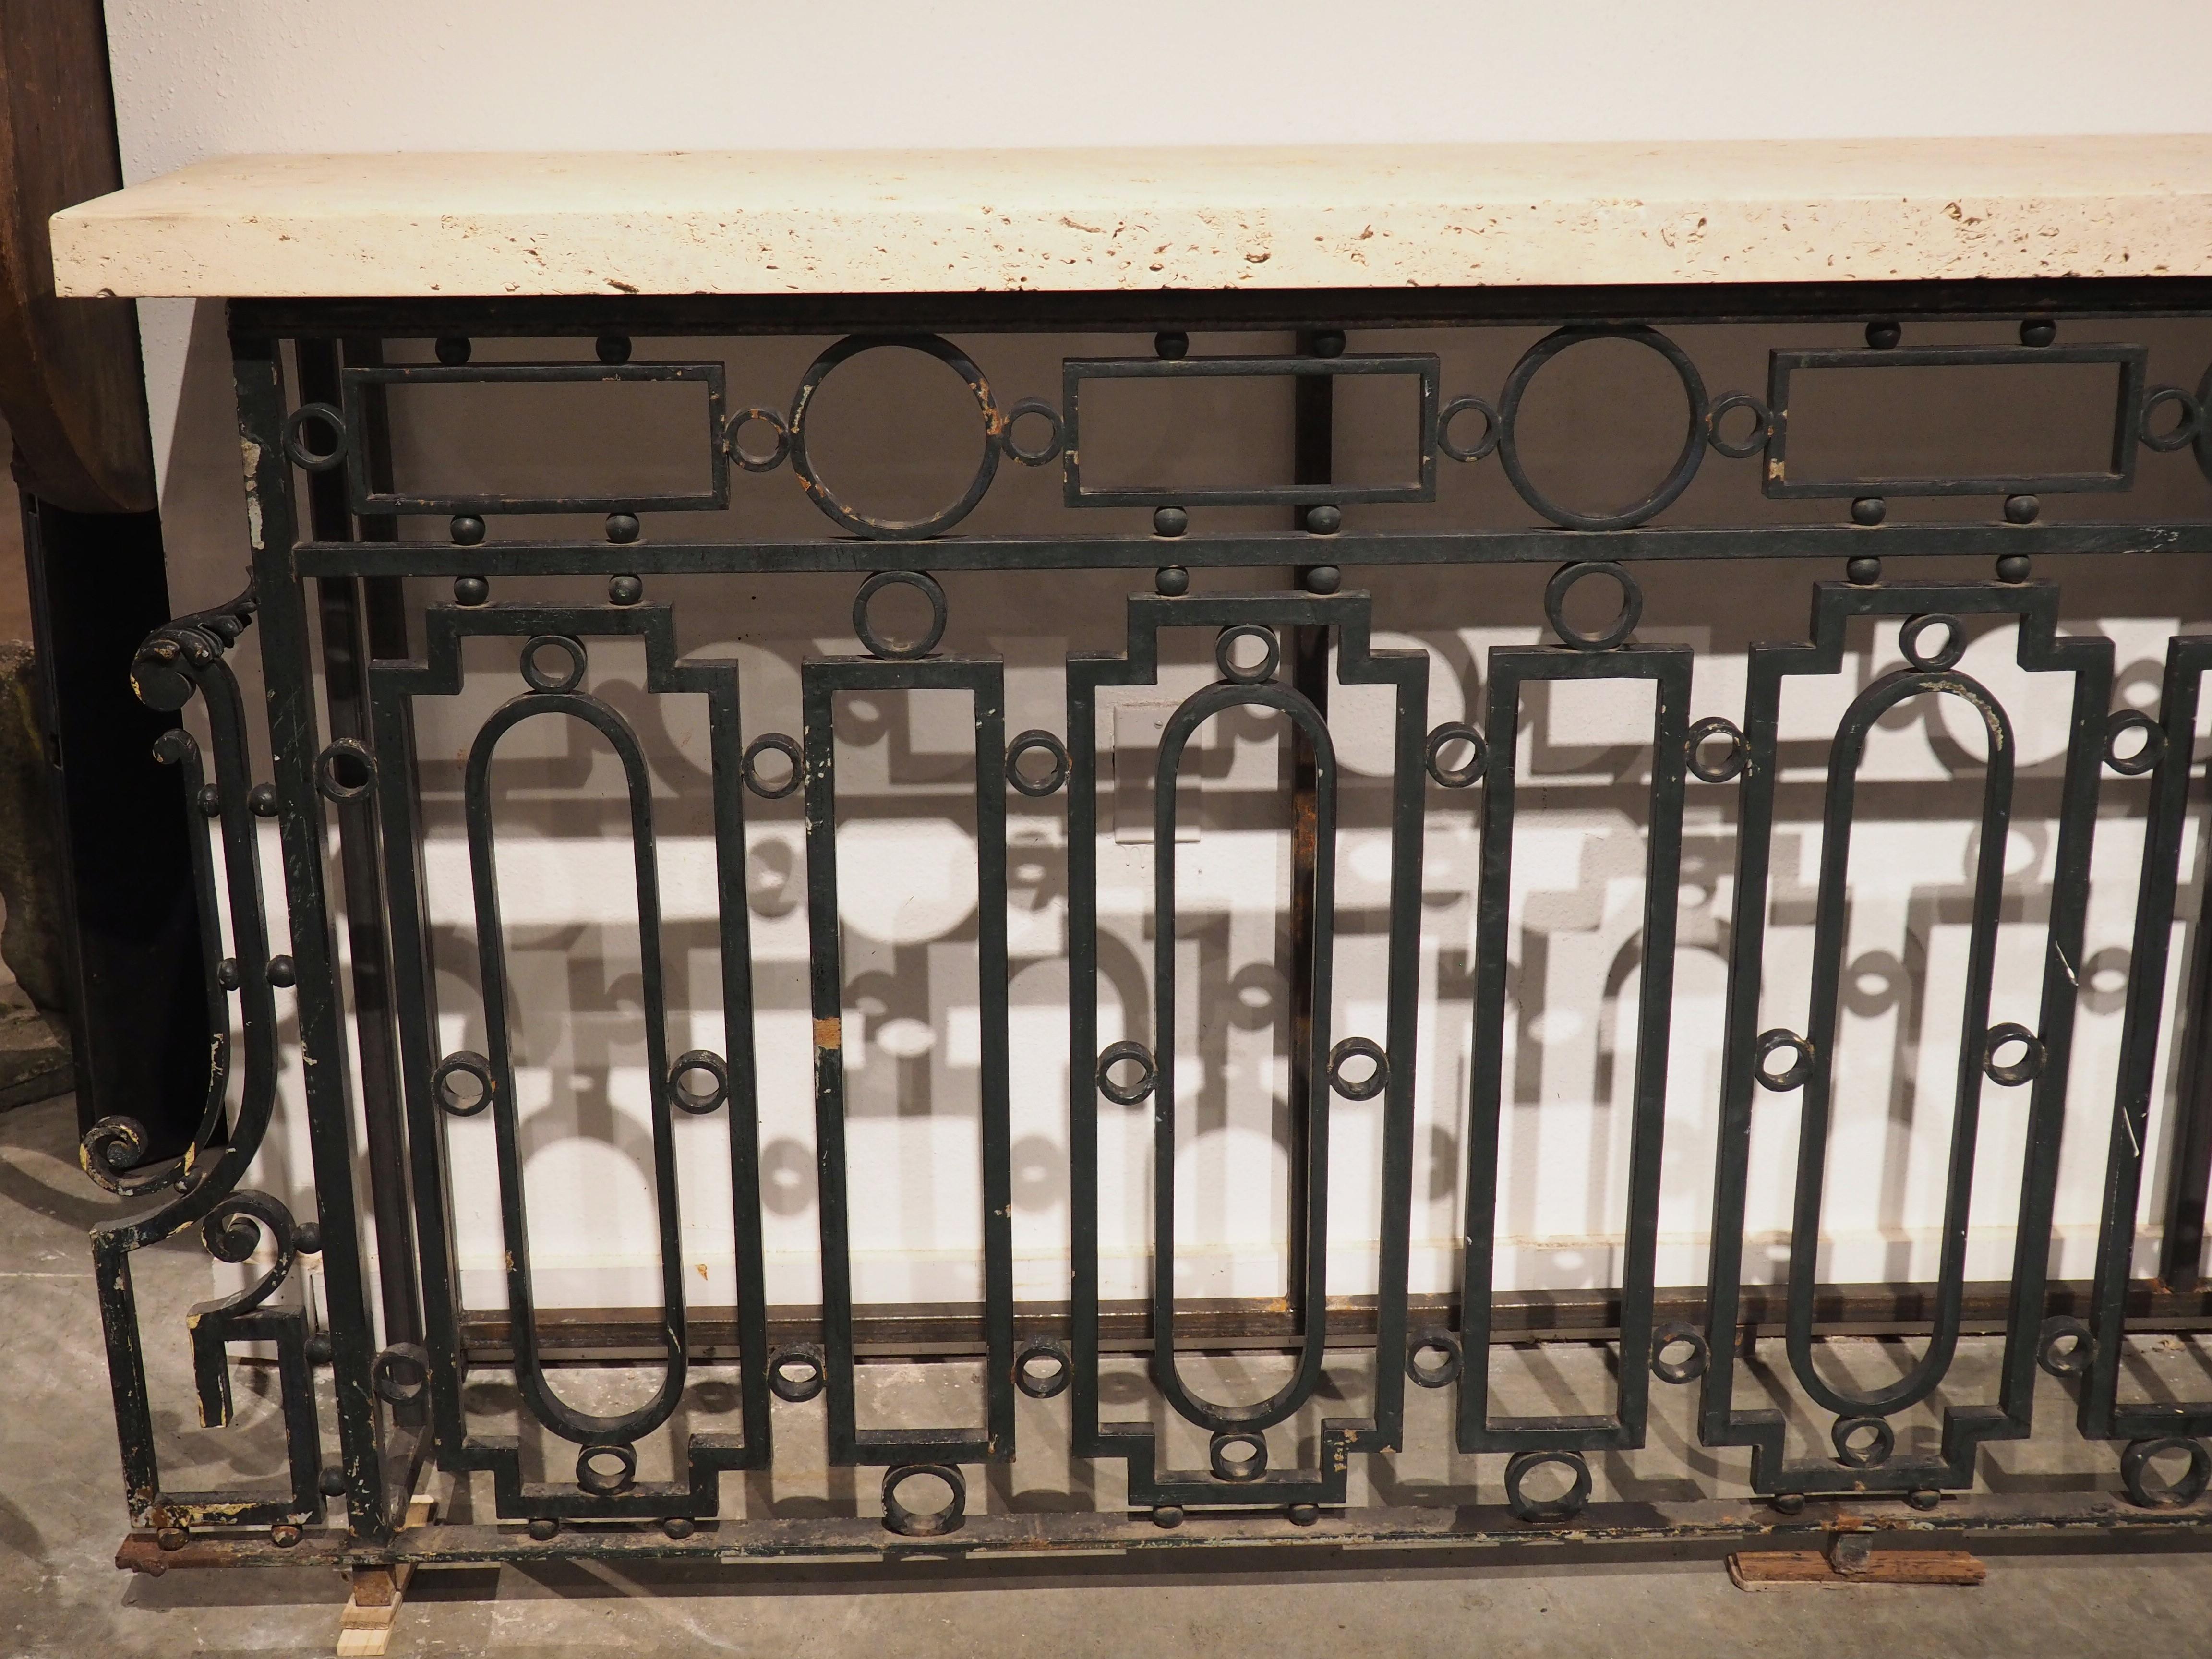 À l'origine, cette rampe de balcon en fer ancien récupéré a été transformée en une magnifique table console avec un plateau en pierre de coquillage. Le garde-corps a été récupéré d'un bâtiment français construit à la fin des années 1800.

Une